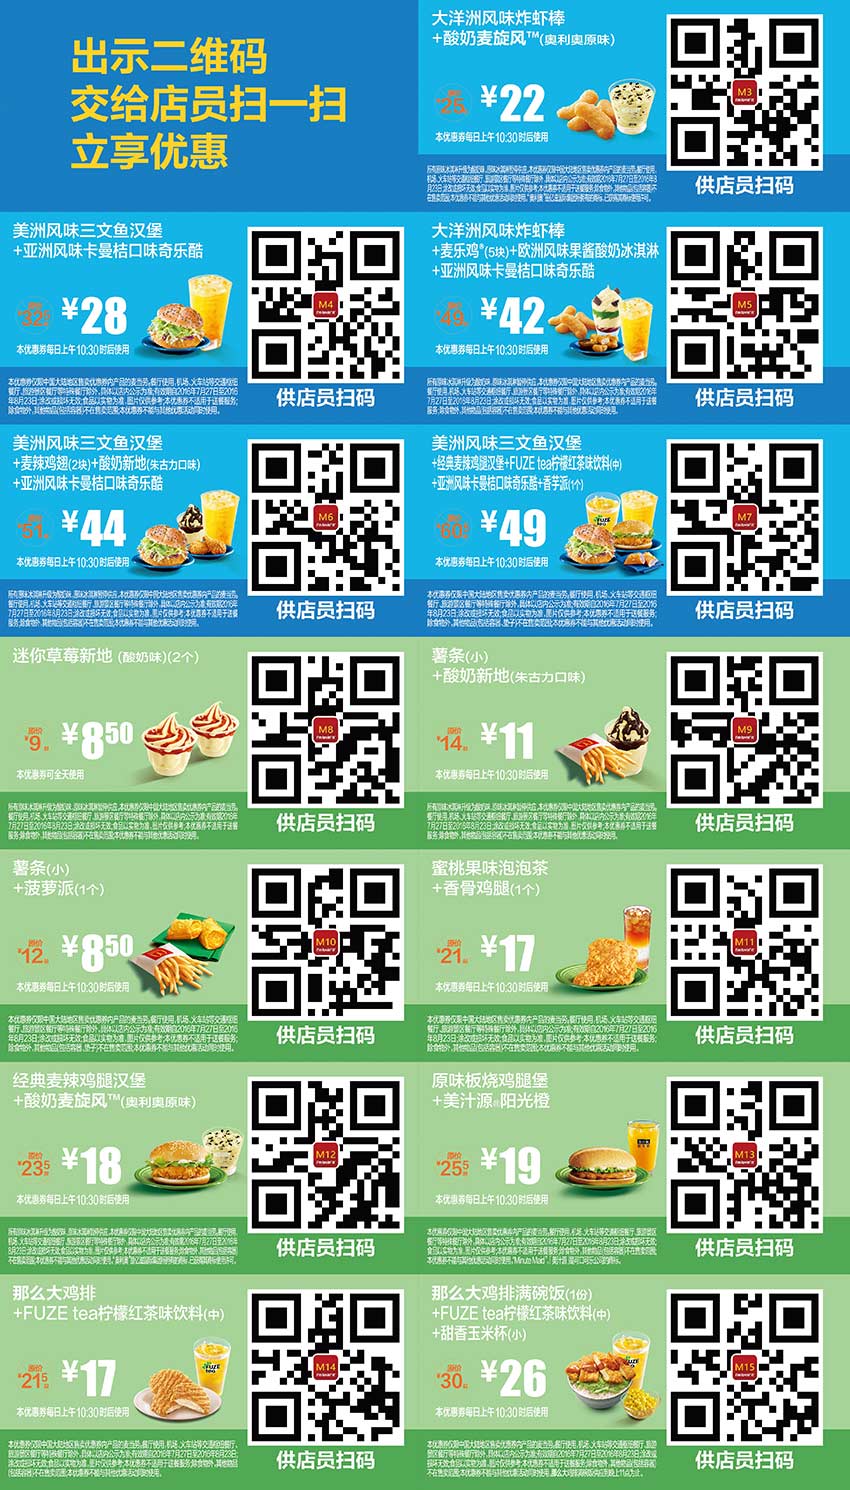 优惠券图片:麦当劳优惠券2016年7月8月整张版本，麦当劳7月8月手机优惠券出示享优惠 有效期2016年07月27日-2016年08月23日